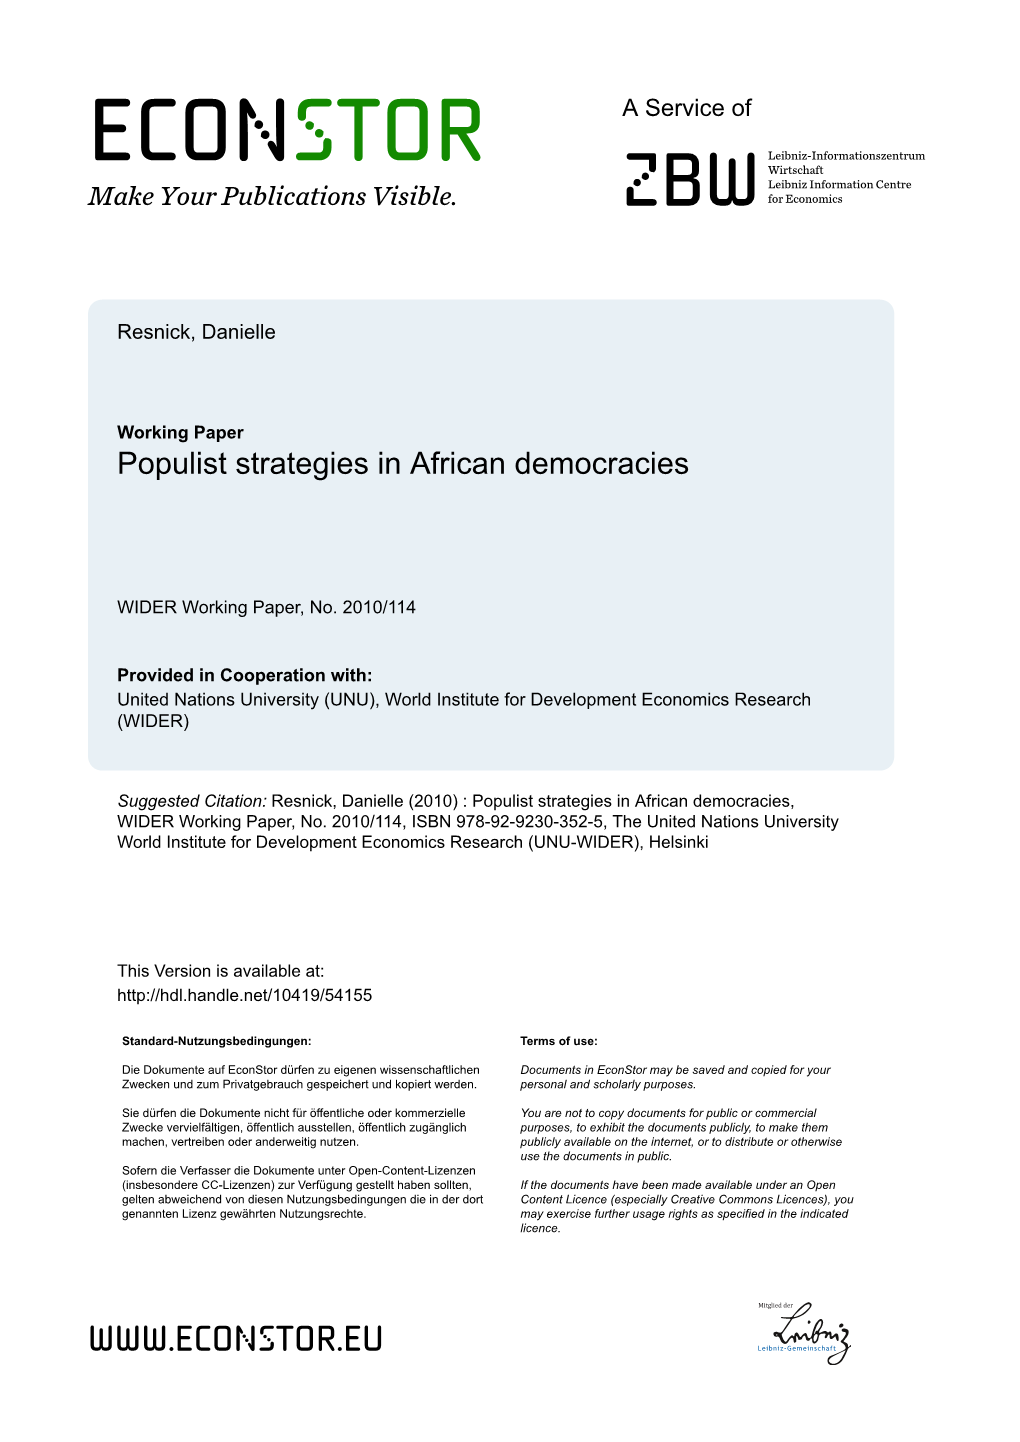 WIDER Working Paper No. 2010/114 Populist Strategies in African